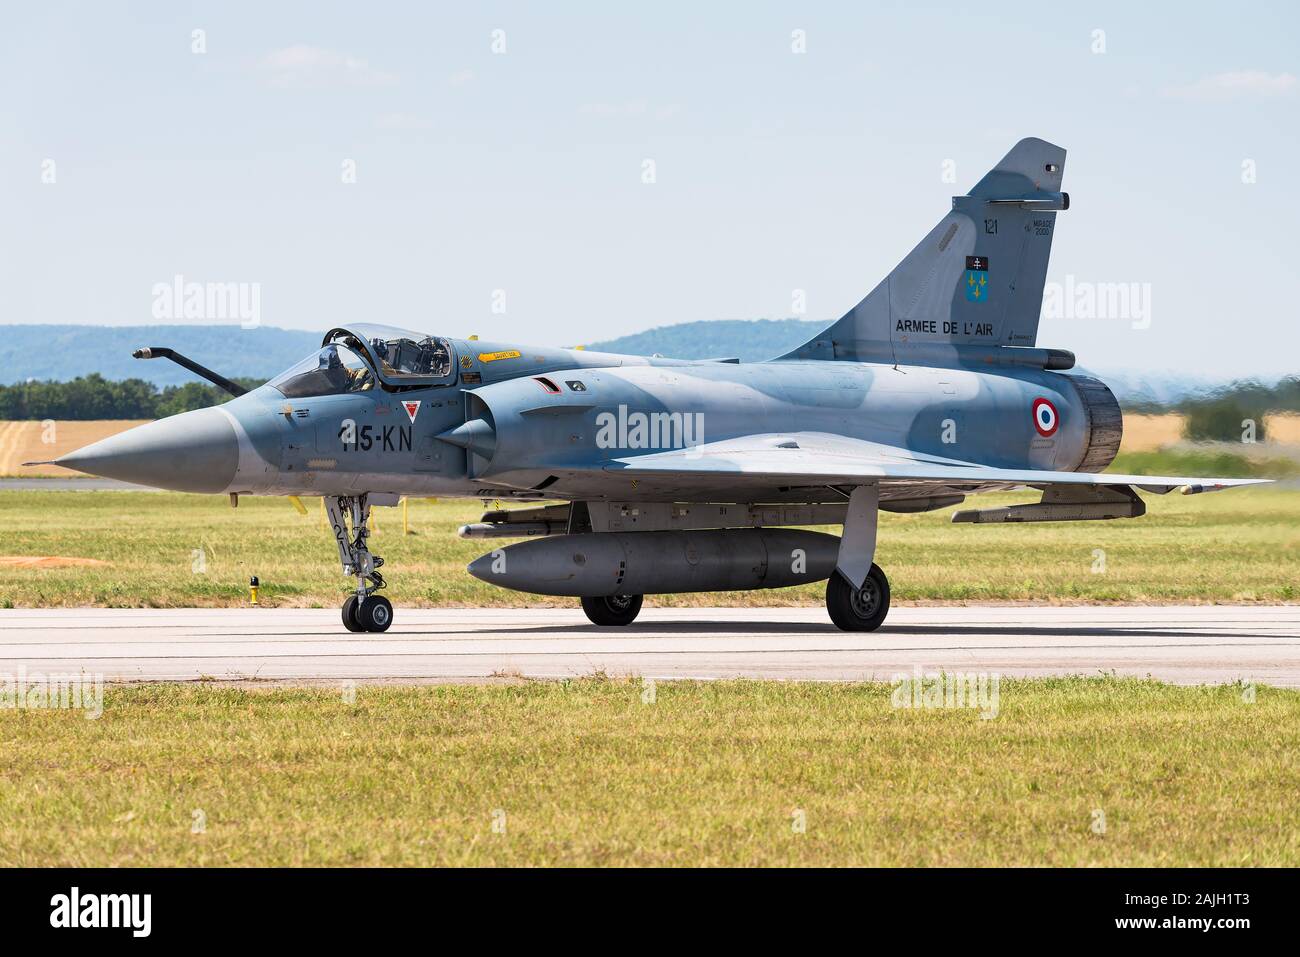 Un Dassault Mirage 2000 avion de chasse de l'Armée de l'Air française. Le Mirage 2000 est un mono-moteur, l'interarmisation quatrième génération d'avion de chasse. Banque D'Images